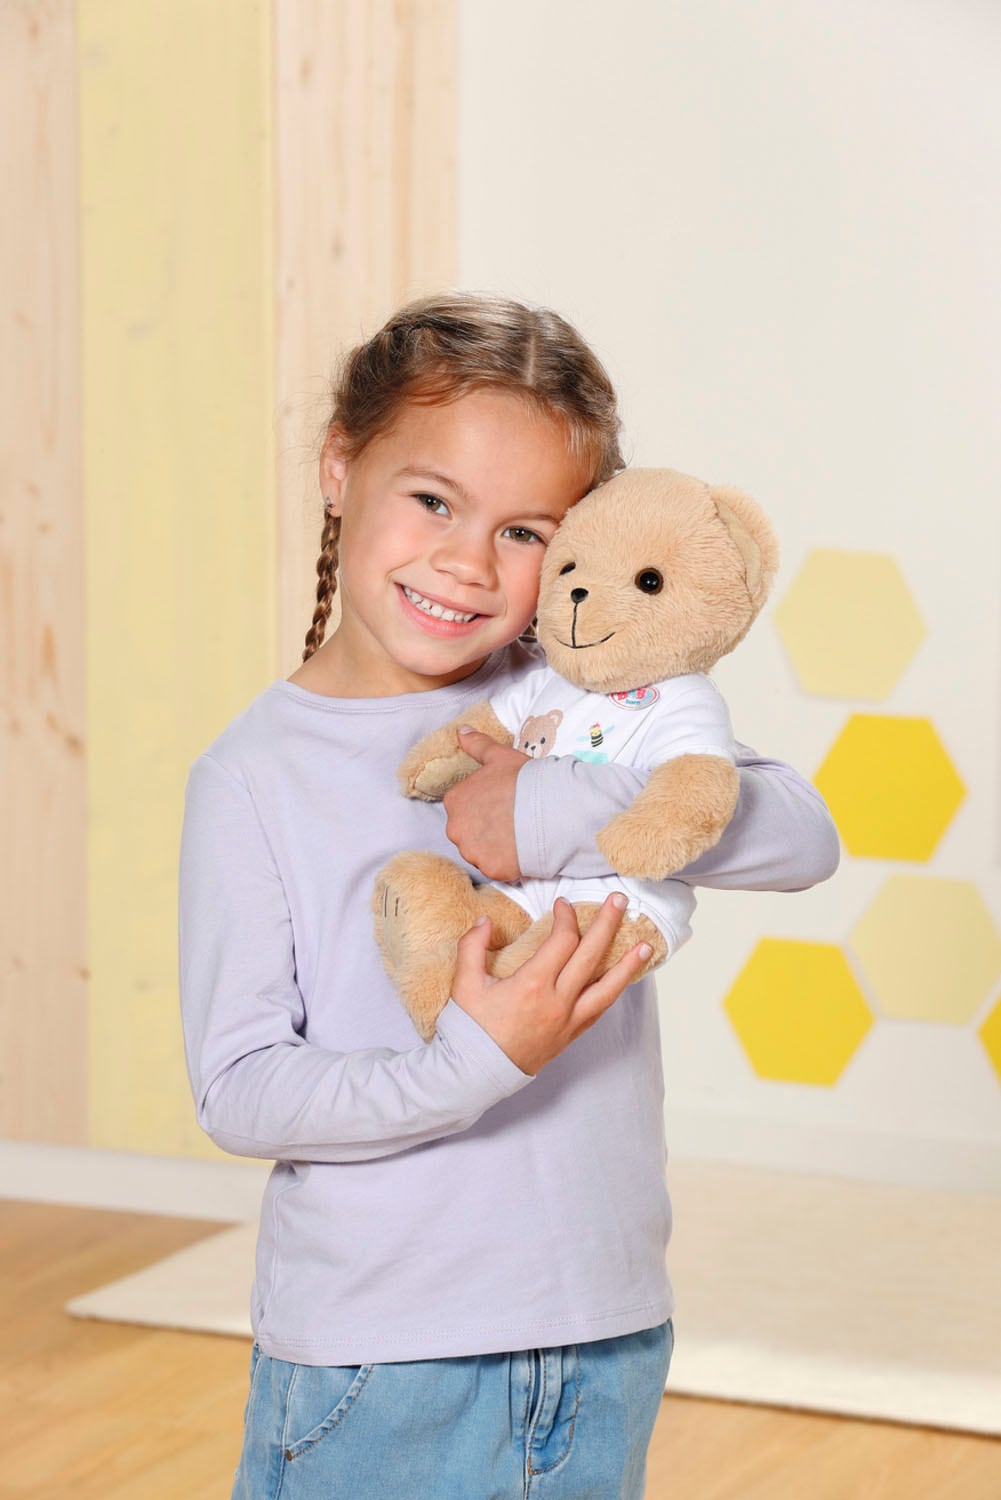 Baby Born Kuscheltier »Teddy Bär, weiß«, inklusive Strampler - Teddybär